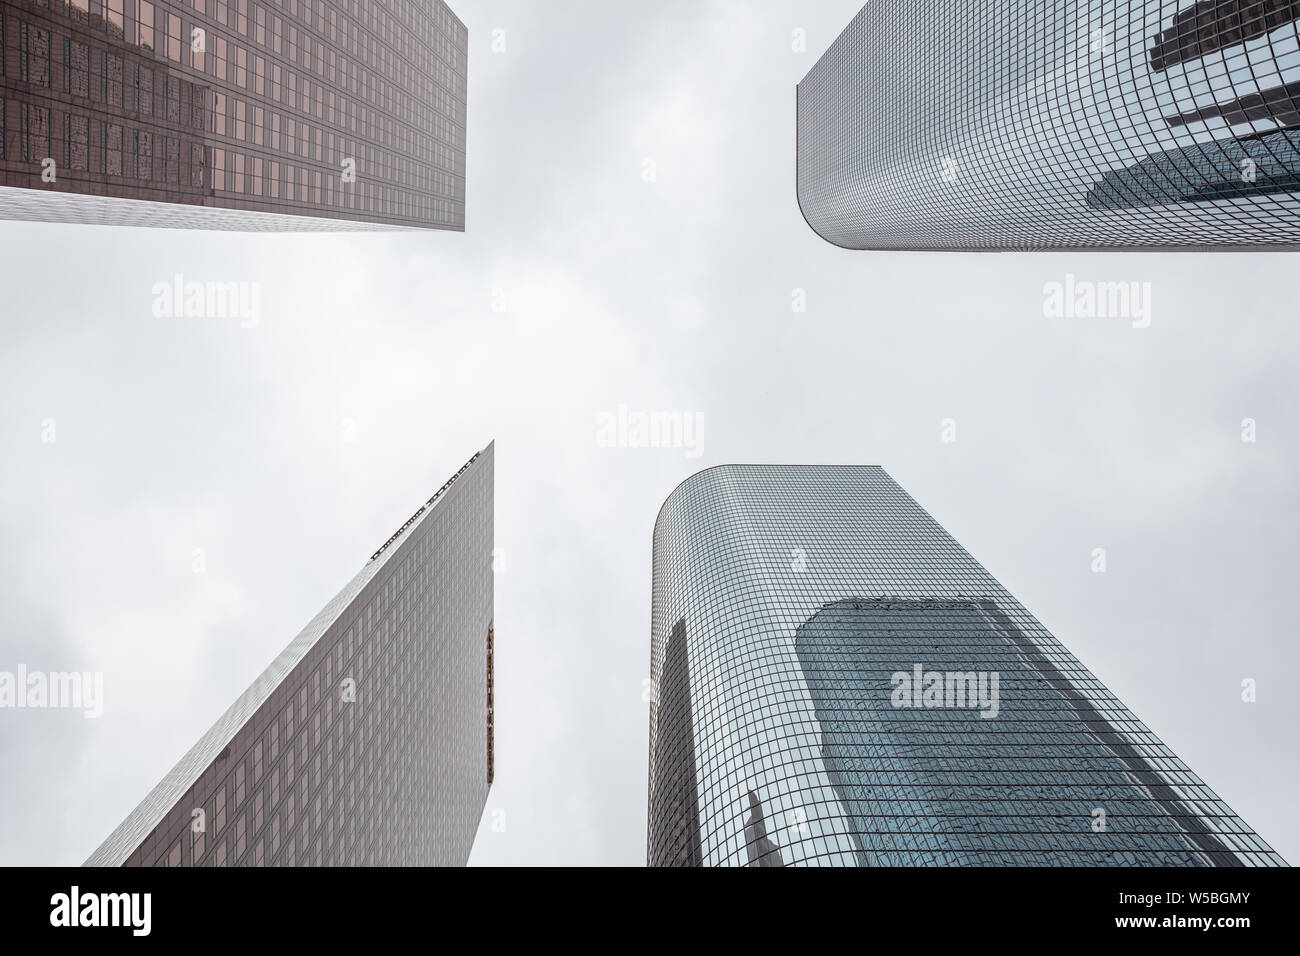 Los Angeles city grattacieli, sfondo con cielo nuvoloso, prospettiva a basso angolo di visione Foto Stock